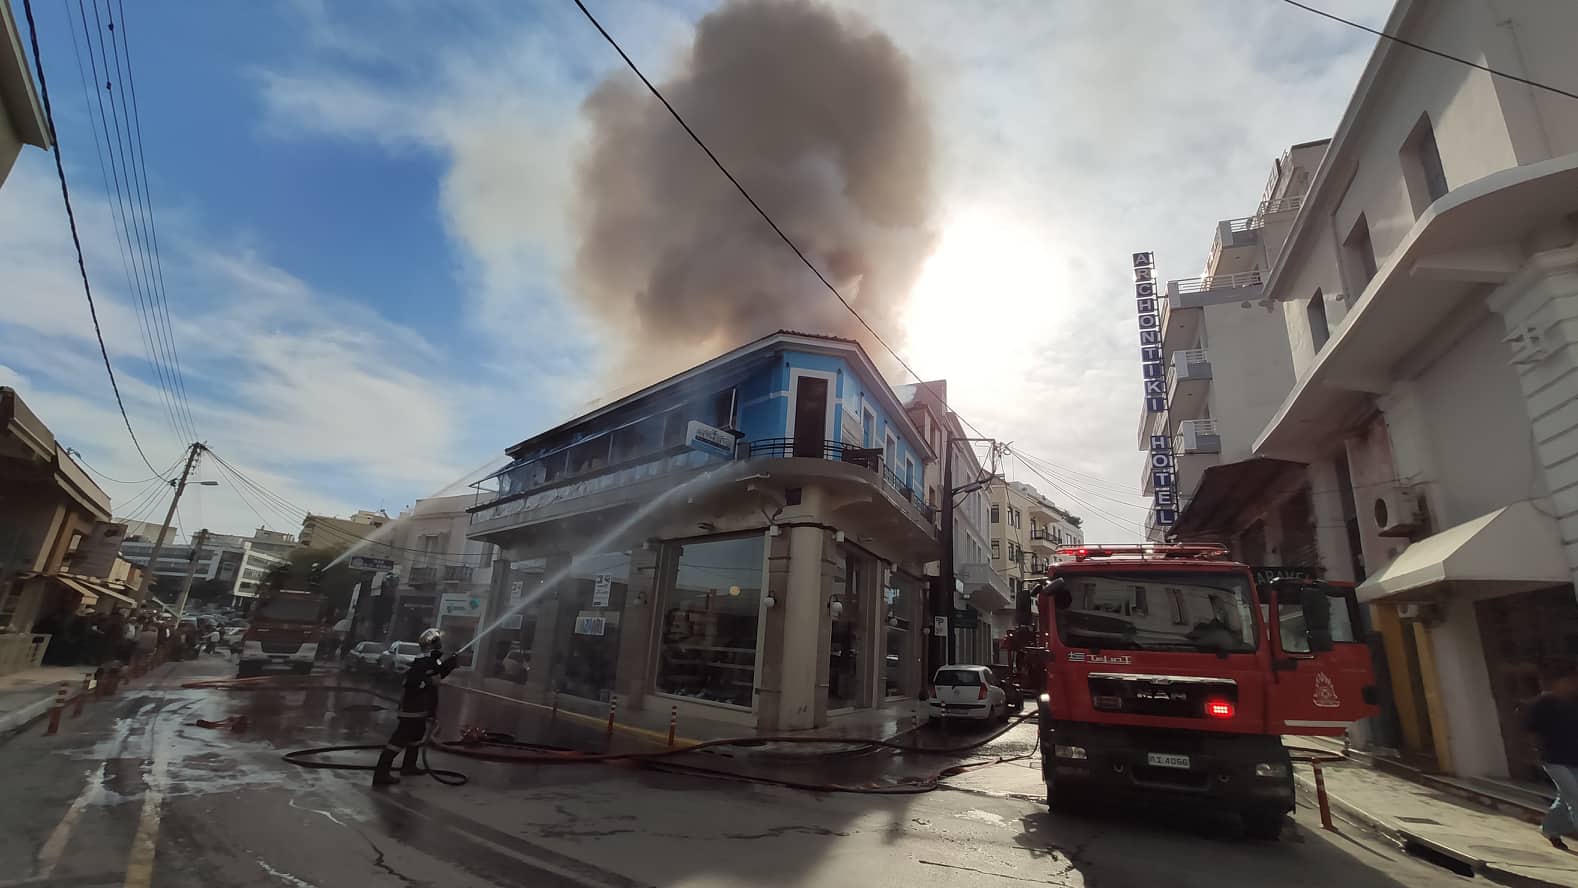 Μεγάλη φωτιά σε εξέλιξη στο κέντρο των Χανίων - Καταστράφηκε ολοσχερώς καφετέρια (φωτο)